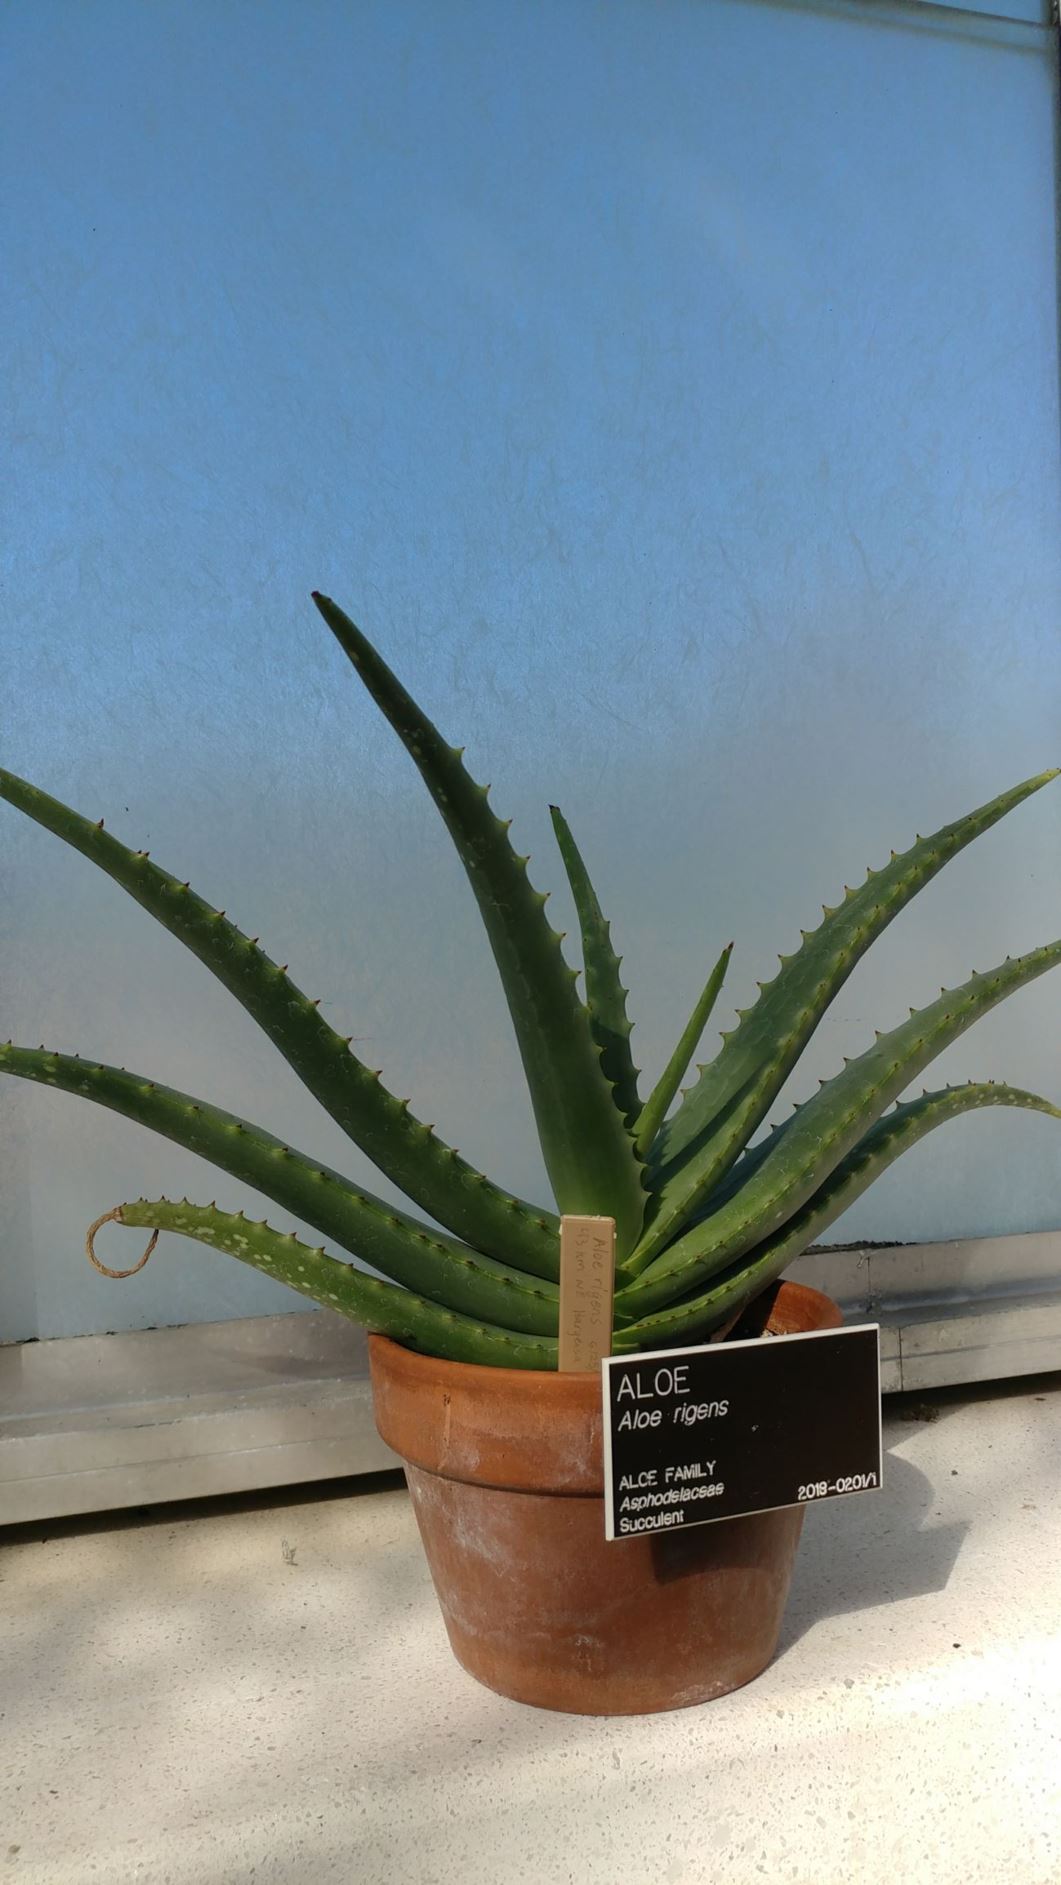 Aloe rigens - aloe